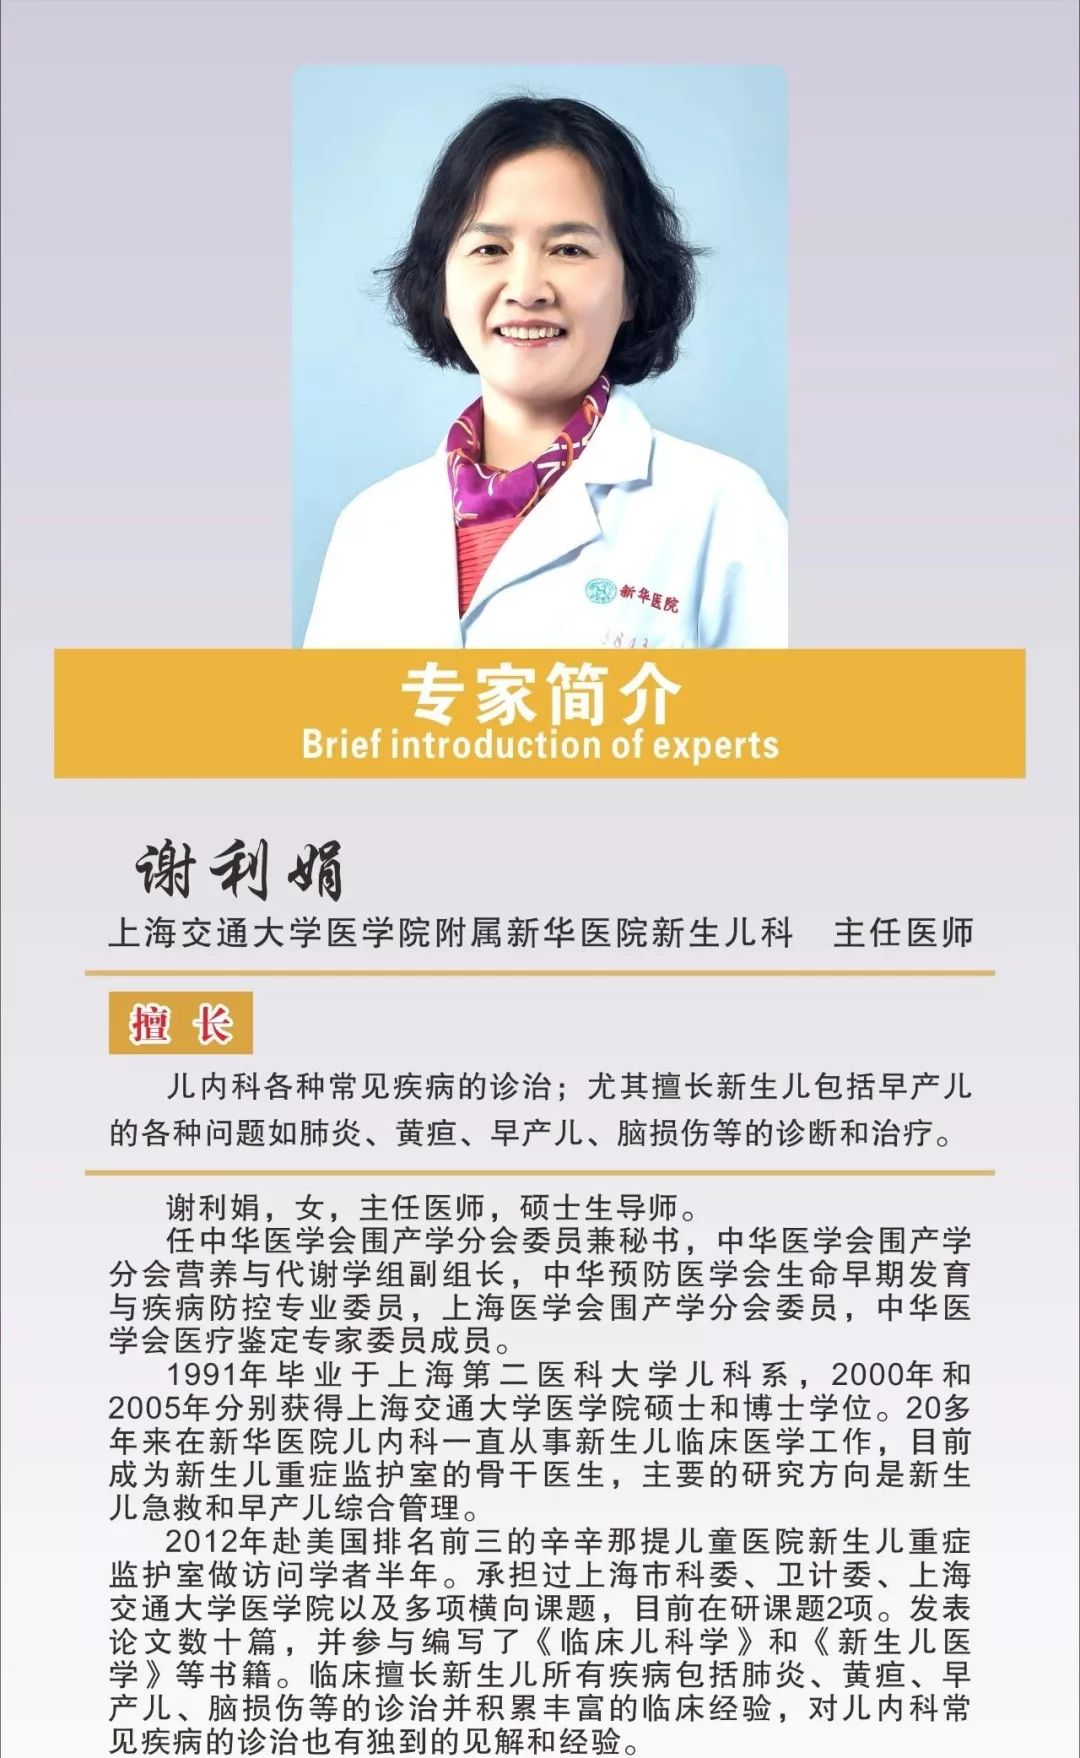 1月18日上海新华医院新生儿科专家坐诊我院介绍 